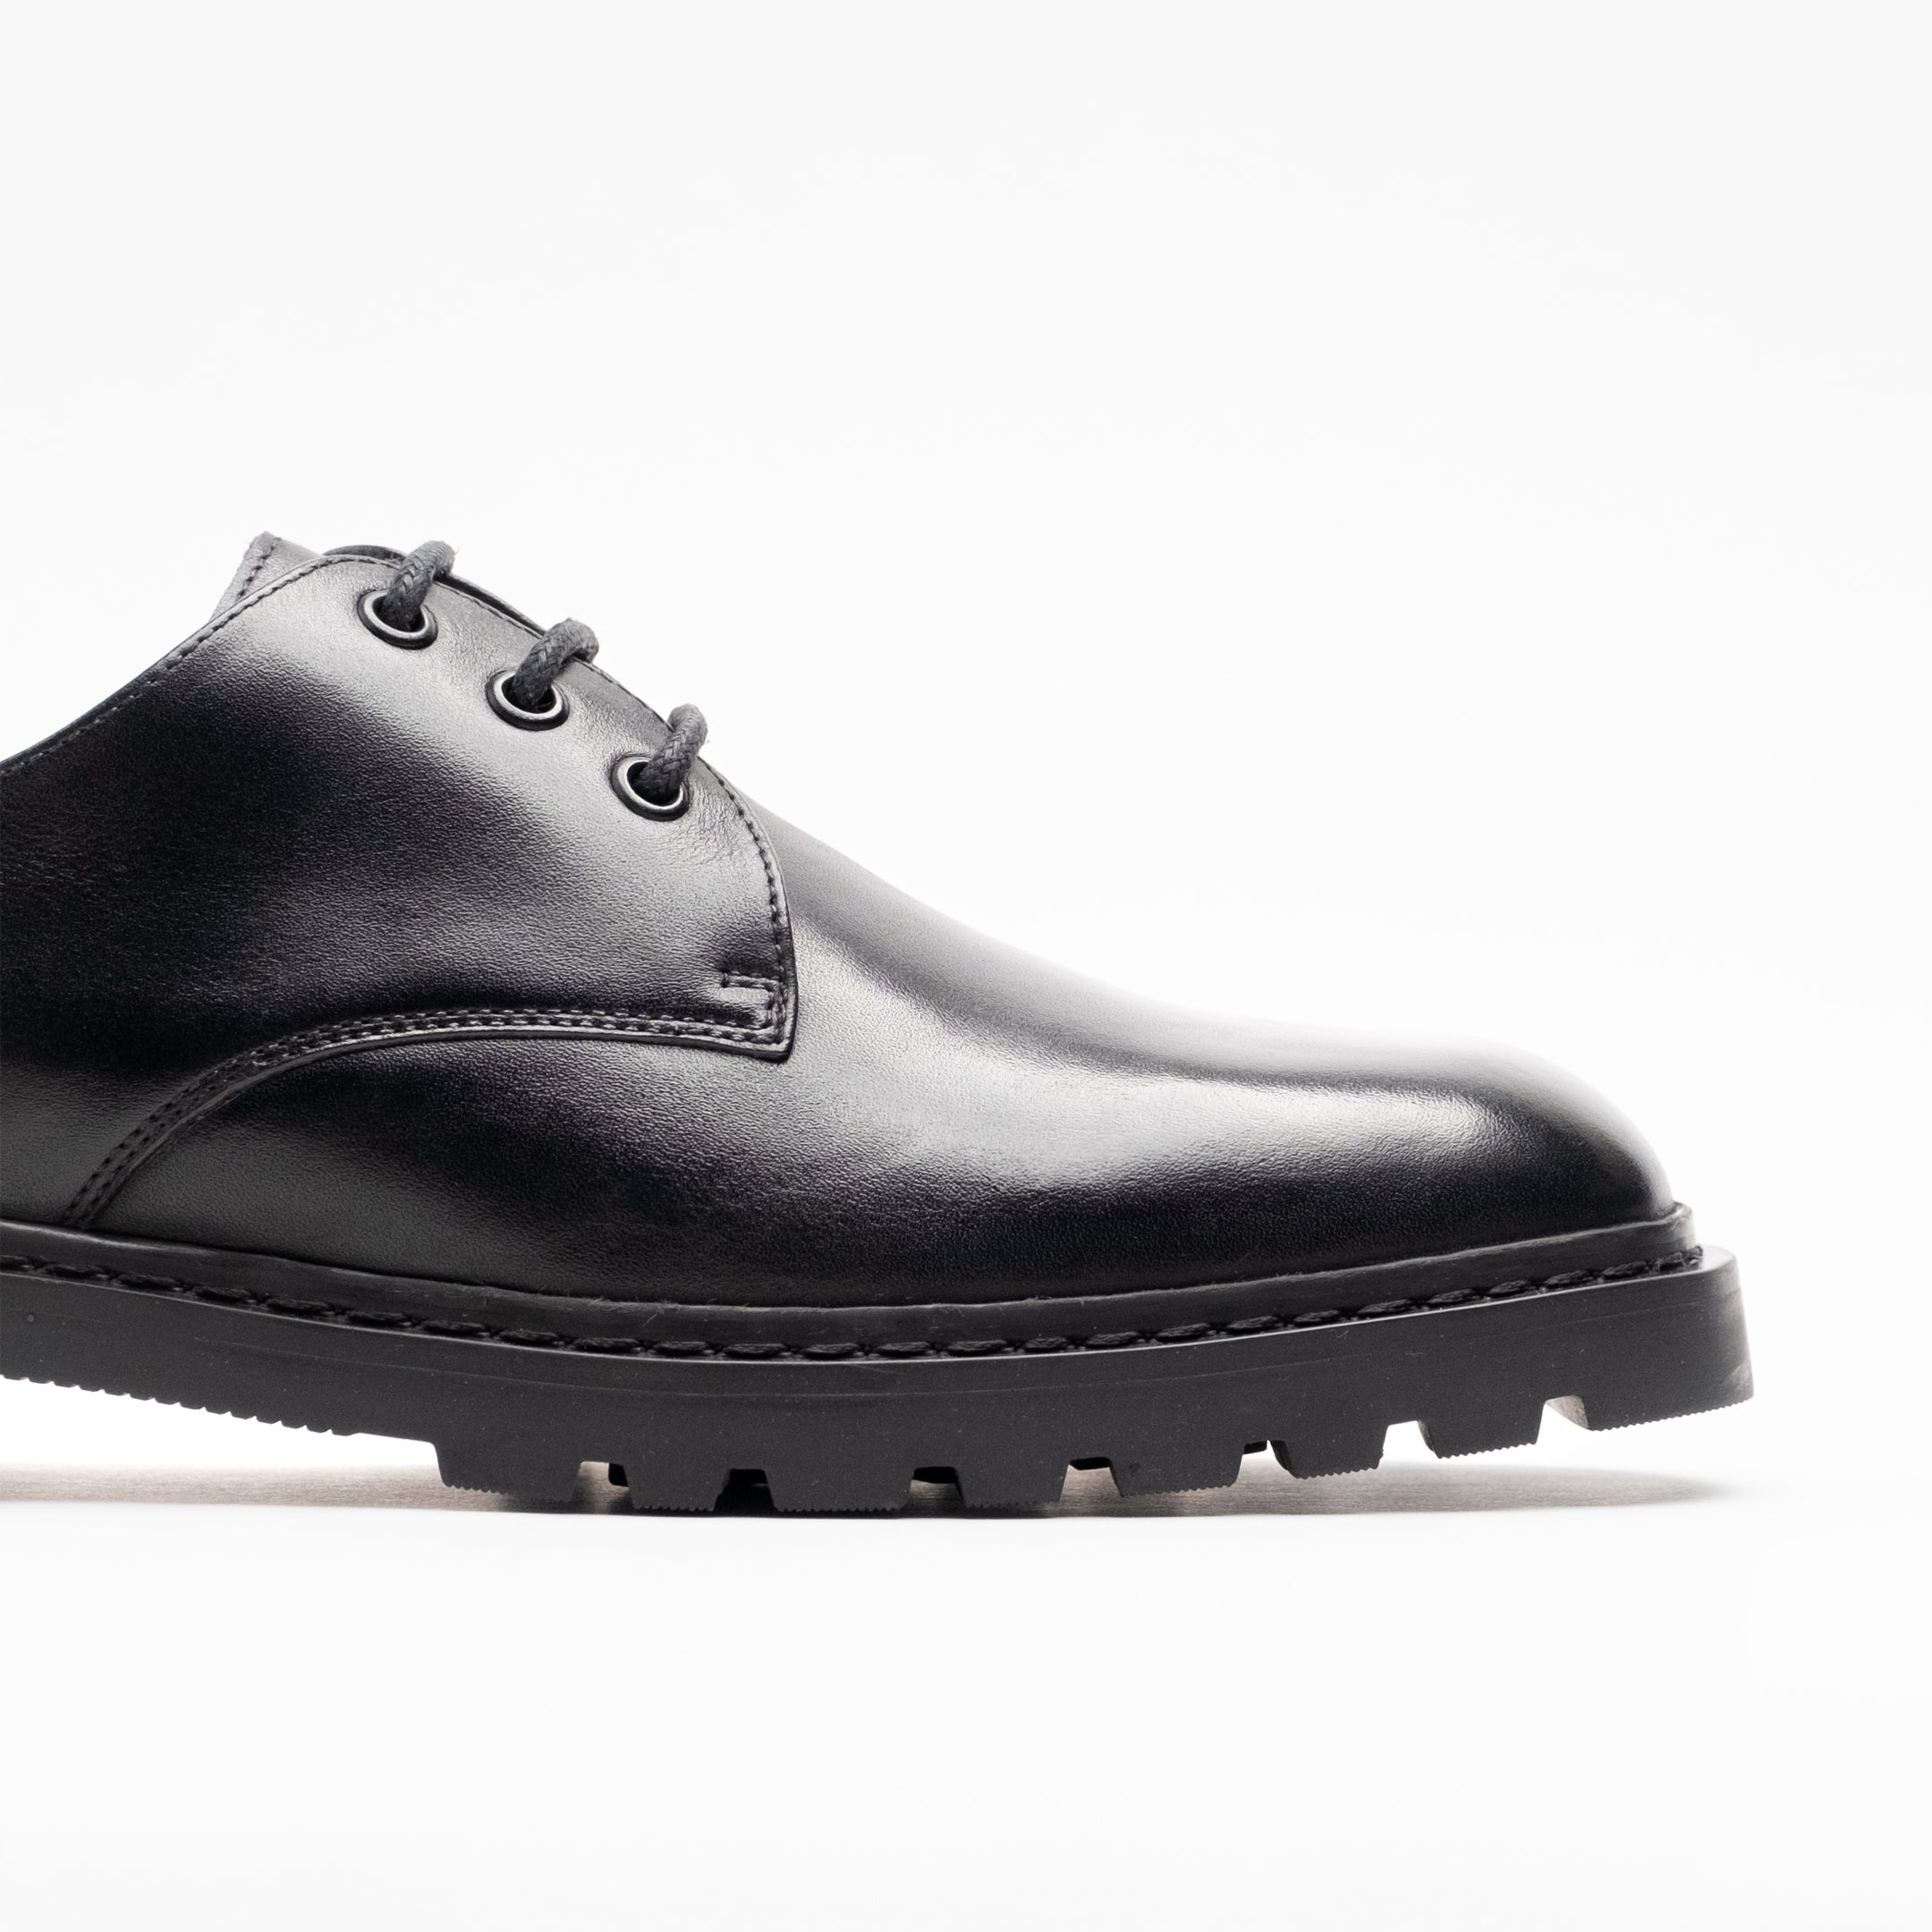 Walk London Mens Milano Derby Shoe in Black Leather